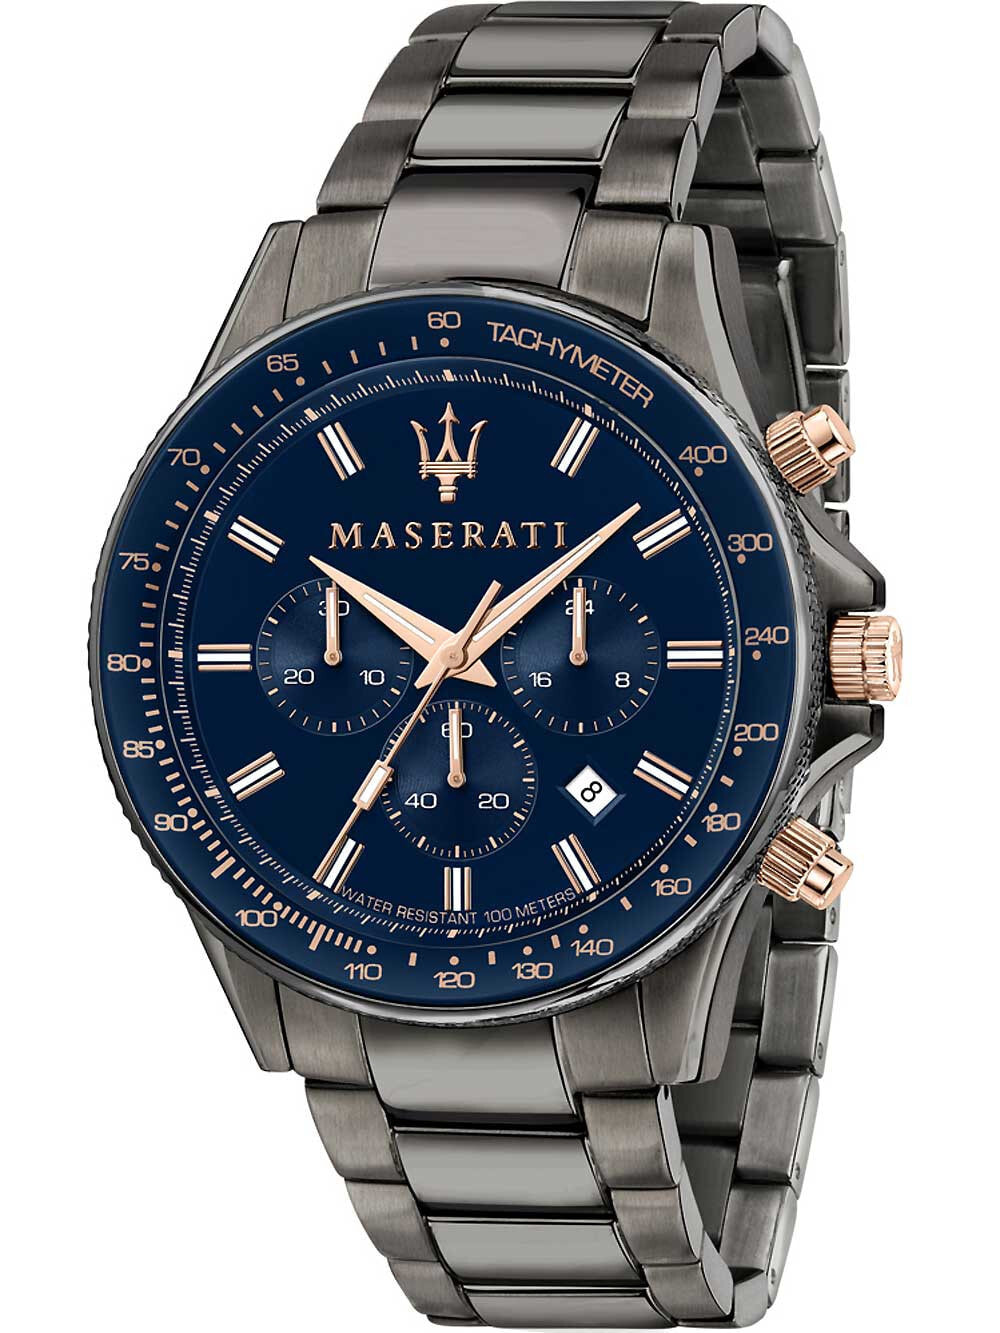 Мужские наручные часы с серебряным браслетом Maserati R8873640001 Sfida chronograph 44mm 10ATM